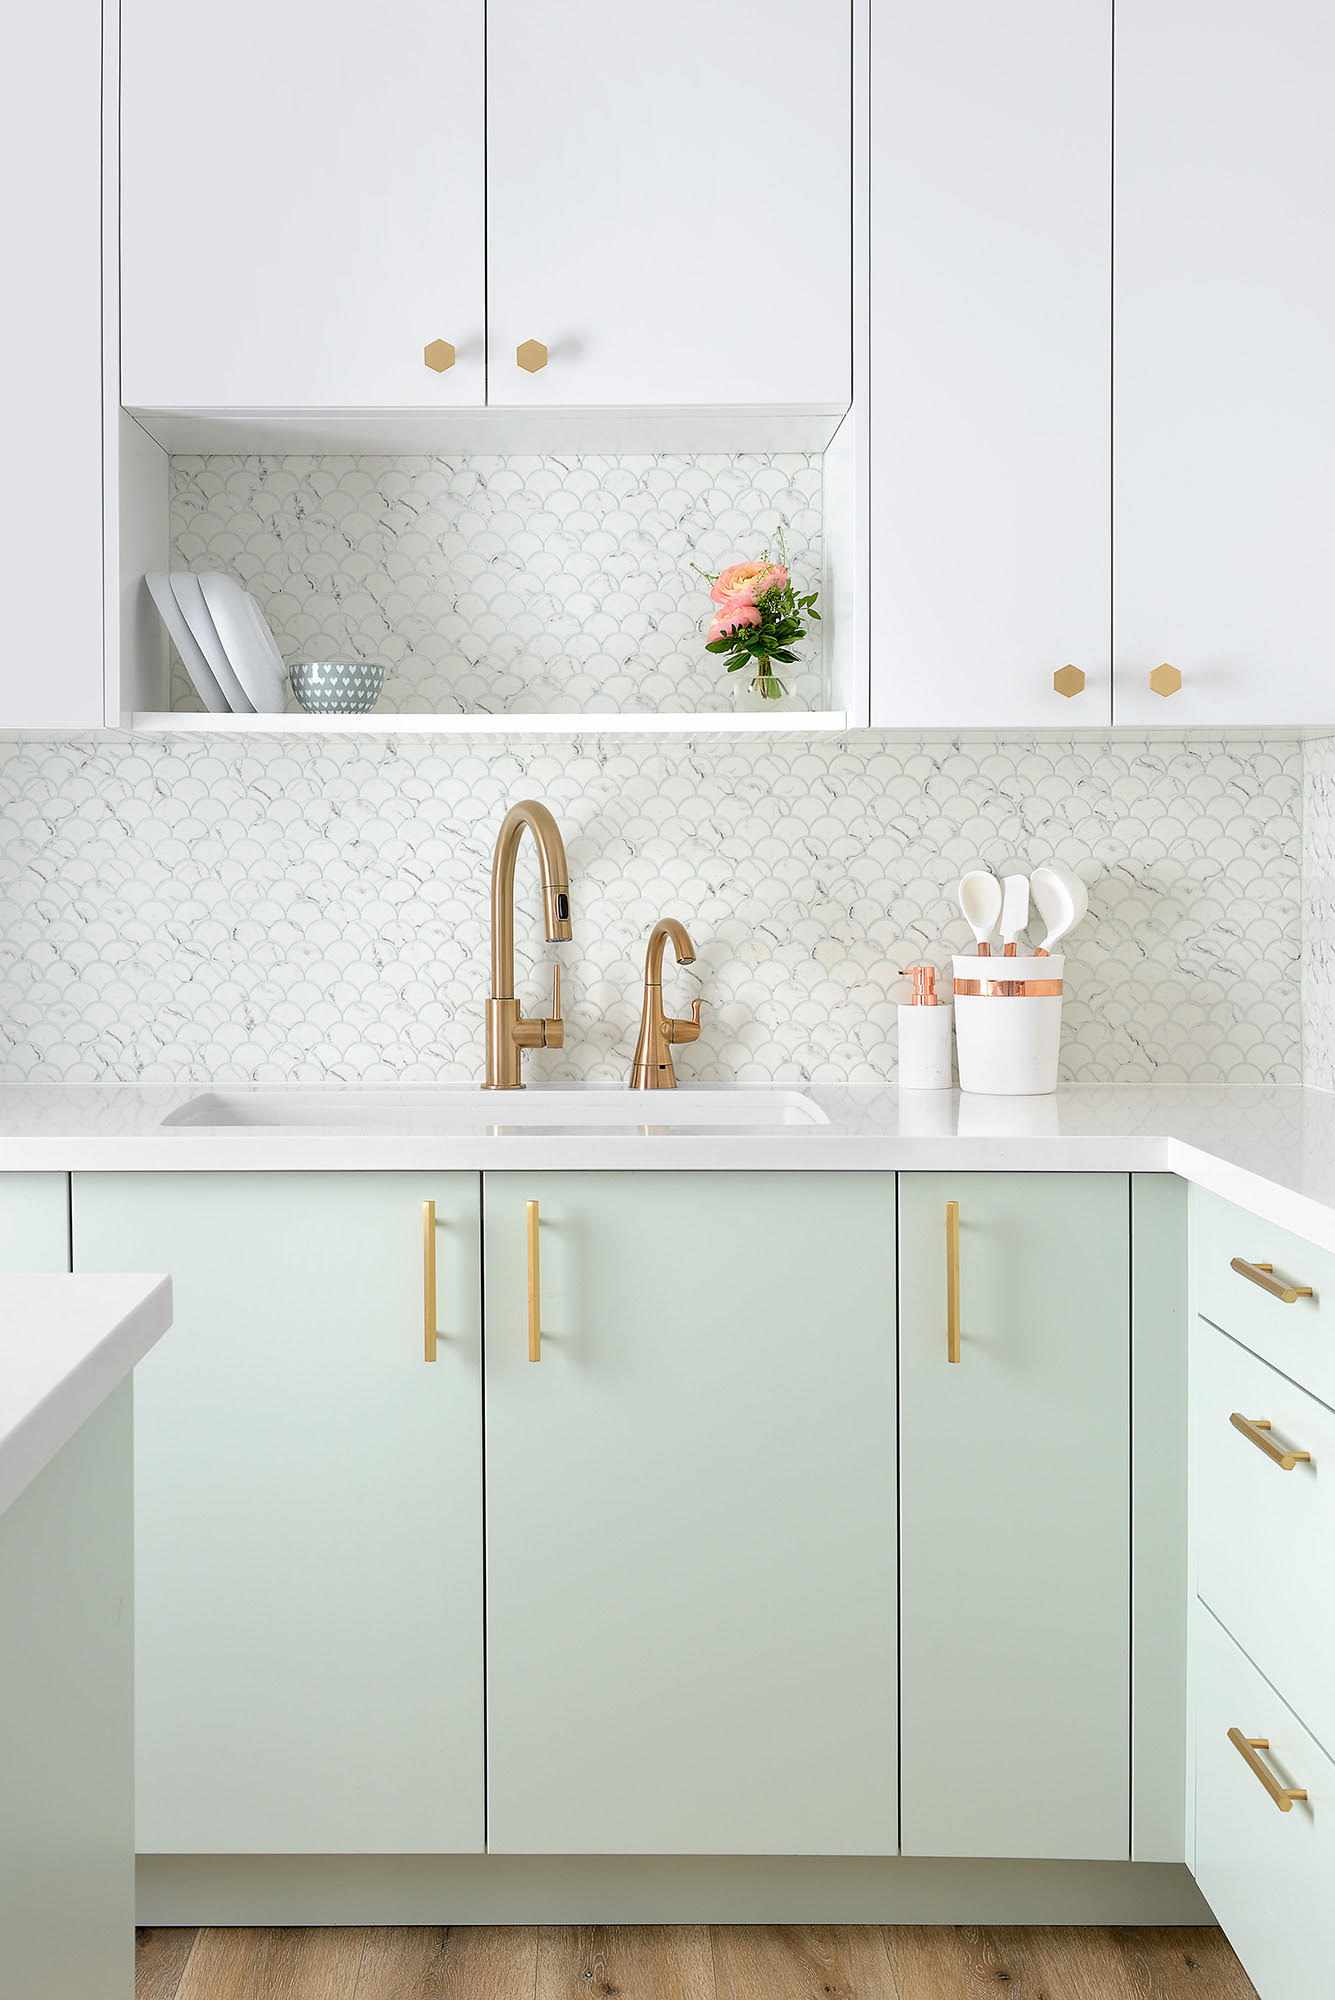 Trang trí nhà bếp bằng giấy dán tường dễ dàng, đơn giản và tiết kiệm rõ ràng so với dùng gạch ốp - Ảnh 6.